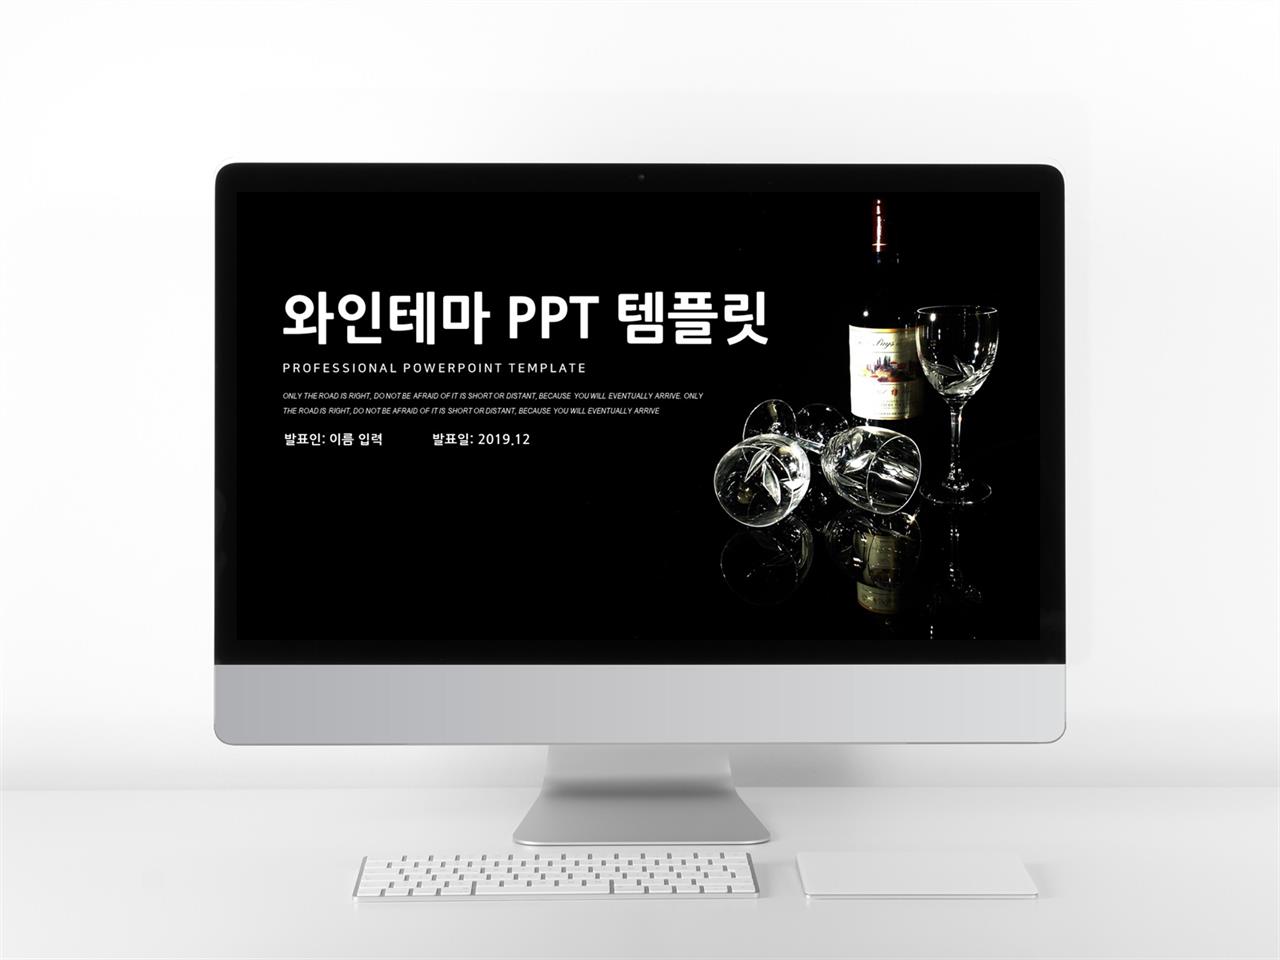 요리미식 검은색 시크한 발표용 POWERPOINT탬플릿 다운 미리보기